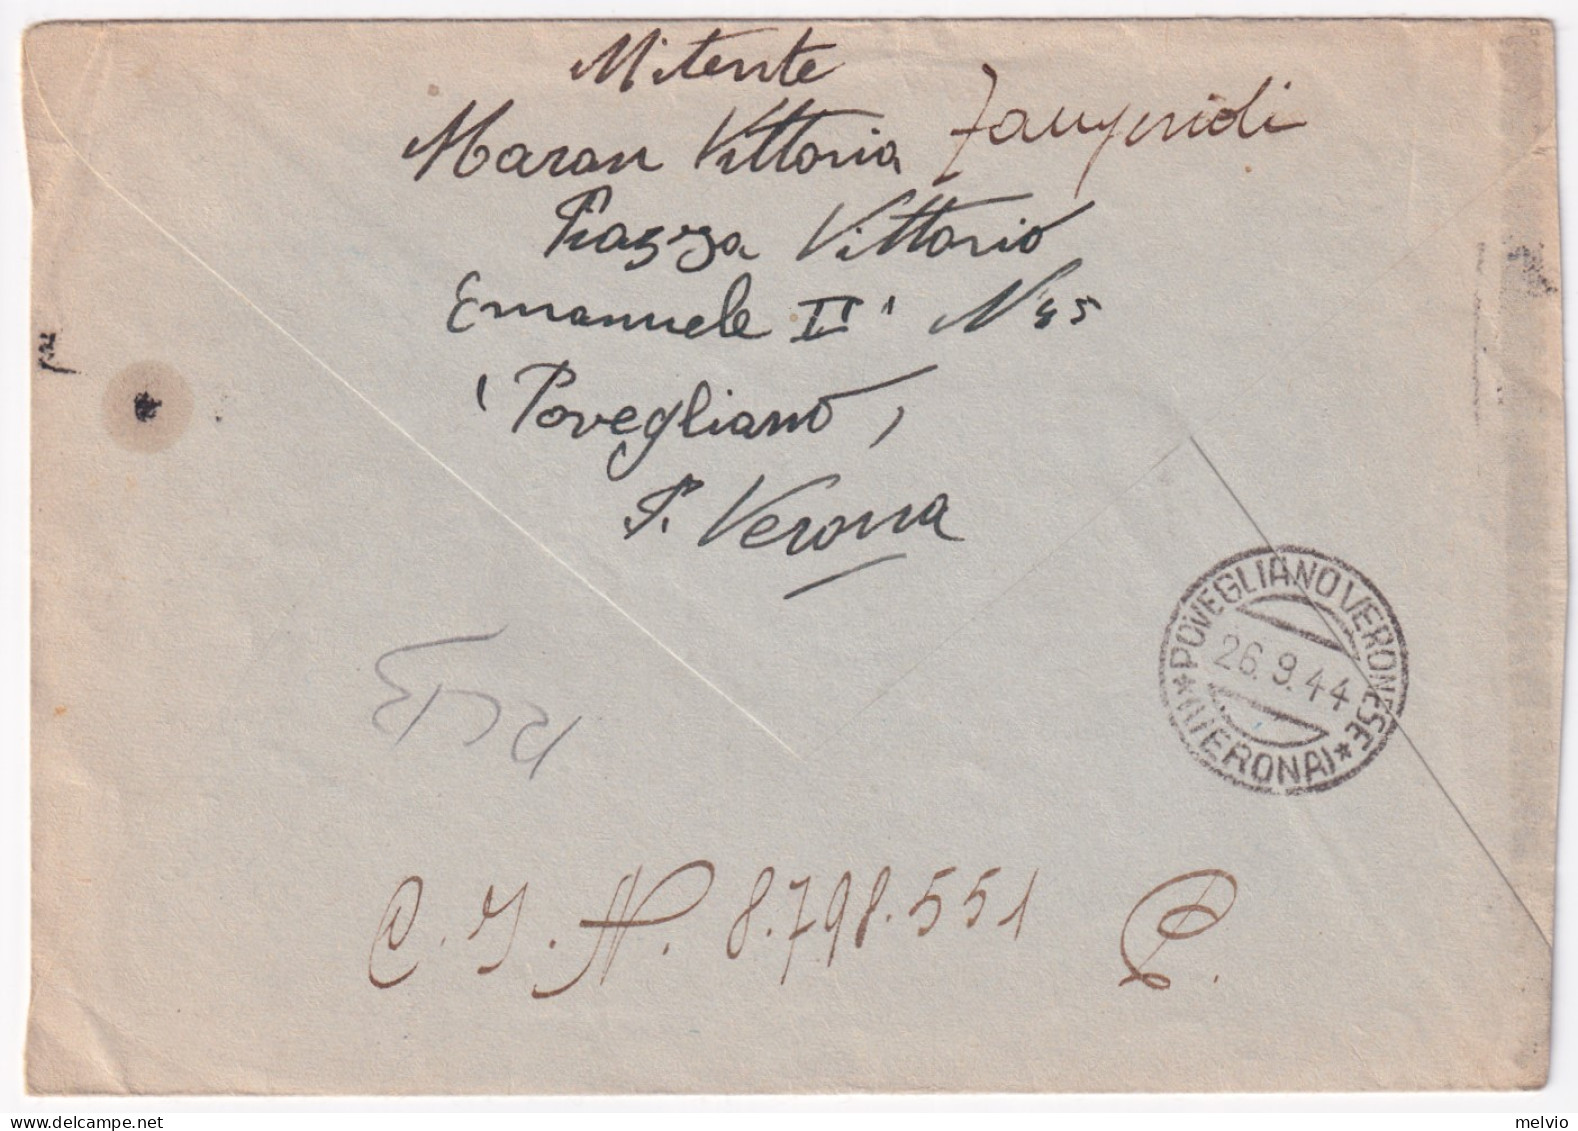 1944-Imperiale Sopr. RSI Lire 1,25 (495) Isolato Su Busta Povegliano (26.9) Per  - Poststempel